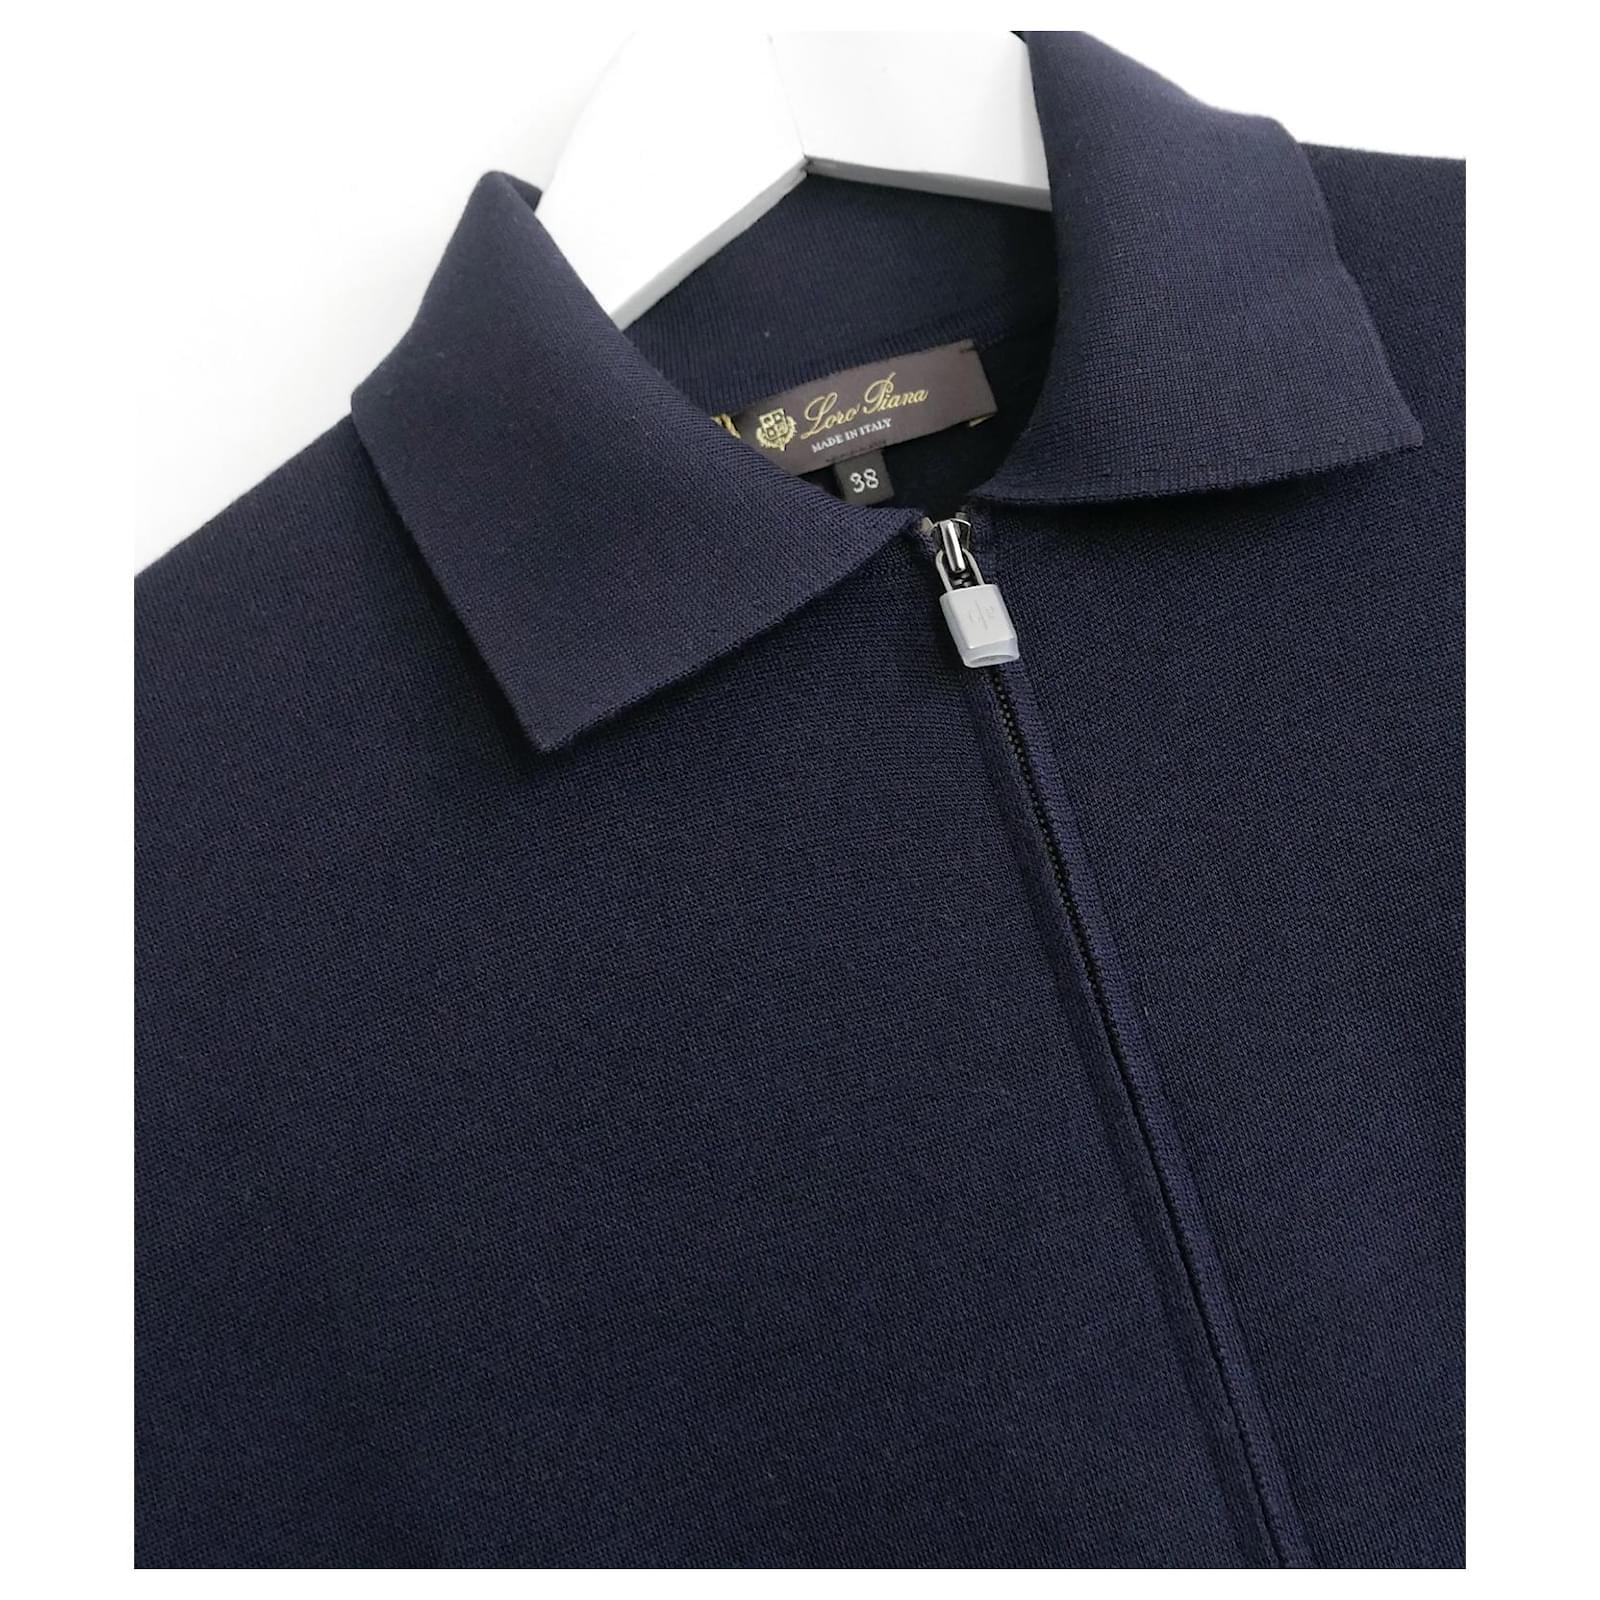 Ultra chic, luxe tranquille Loro Piana Beau Rivage knit bomber jacket - acheté pour £2250 et neuf avec étiquettes et manches proactives aux boutons de fermeture éclair. Confectionné dans un tricot de soie marine de poids moyen, lisse et dense, avec